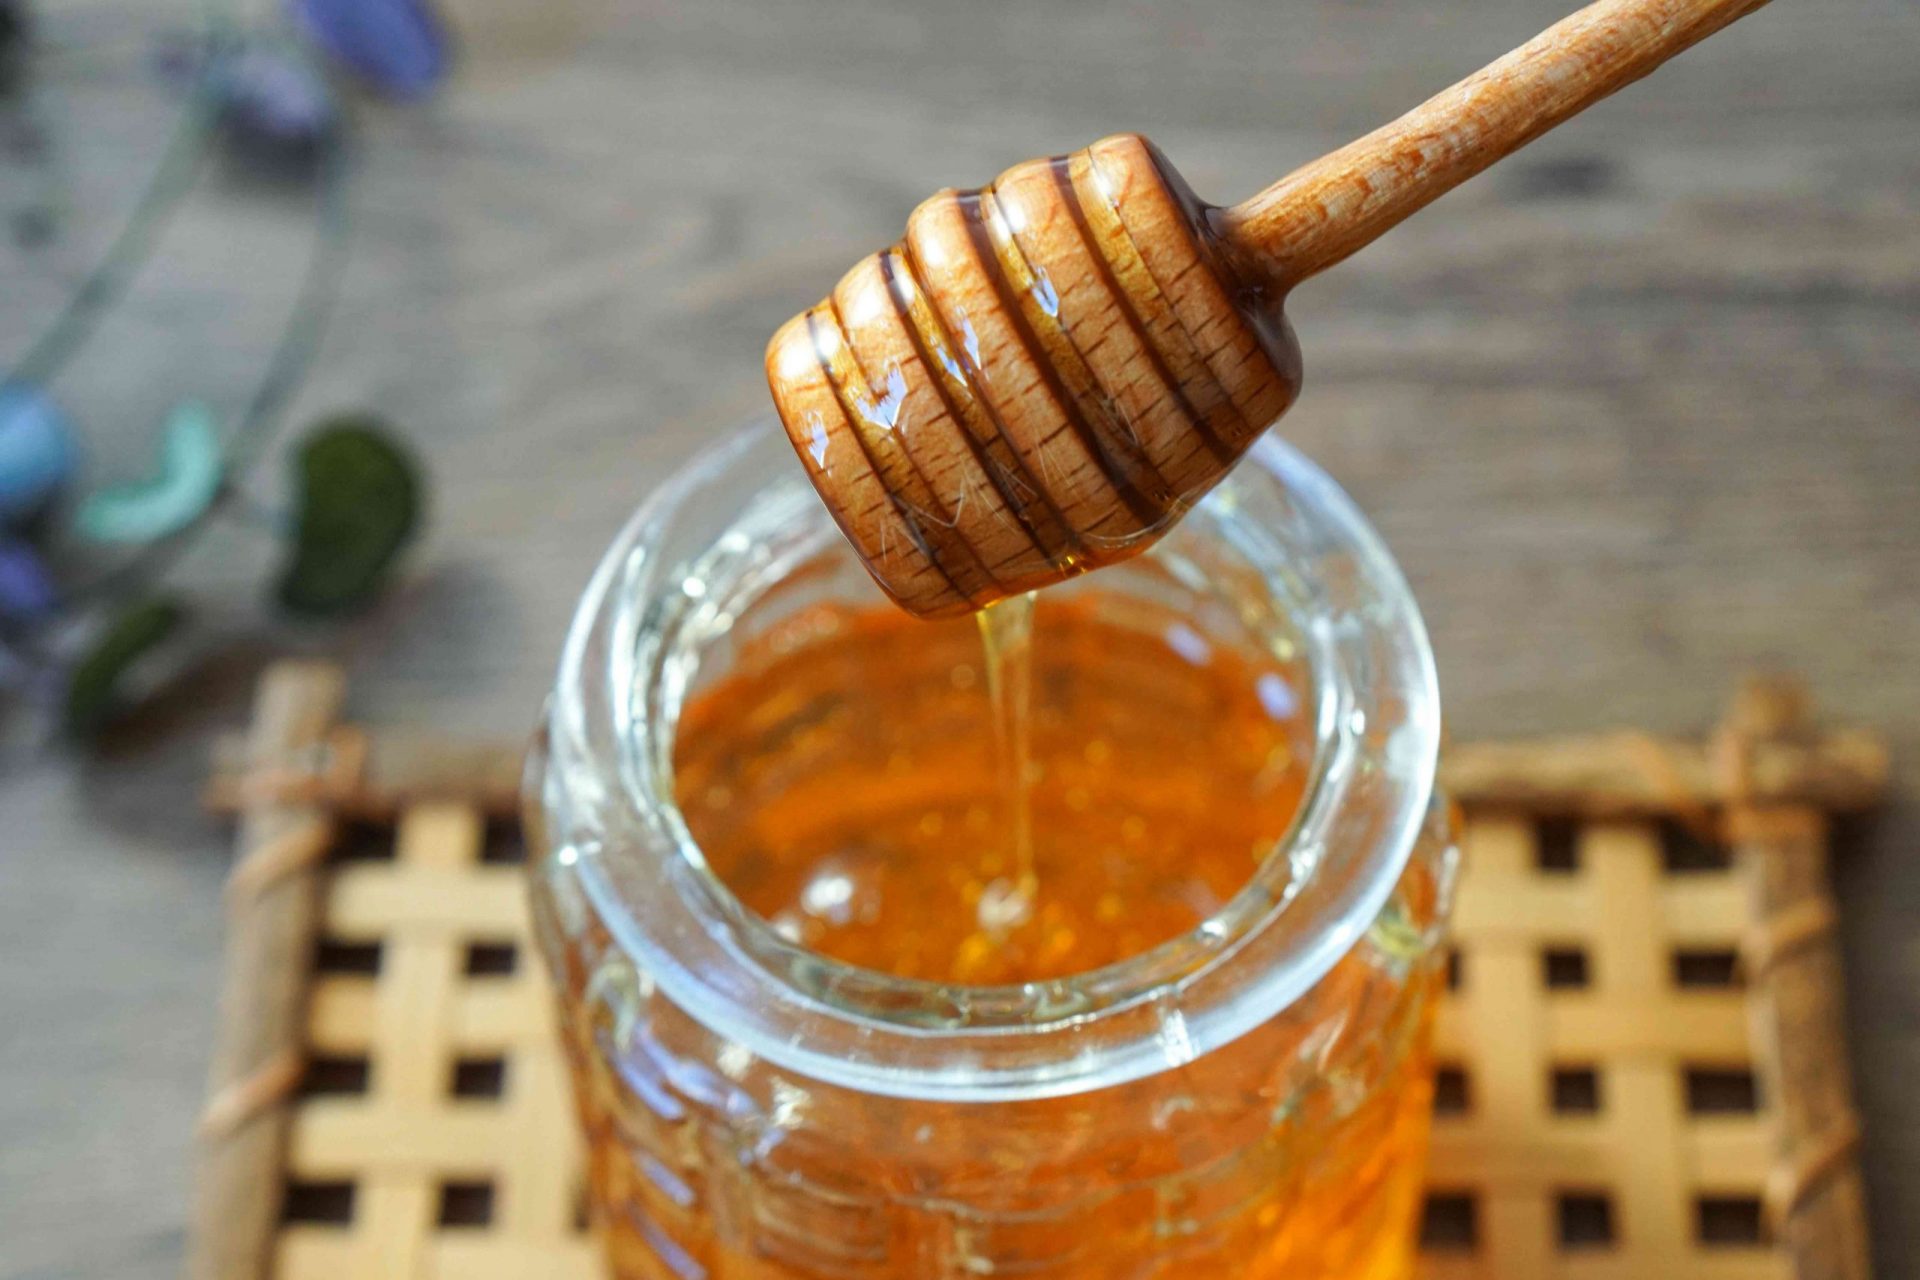 cazo de miel de madera se saca del recipiente de cristal que gotea miel